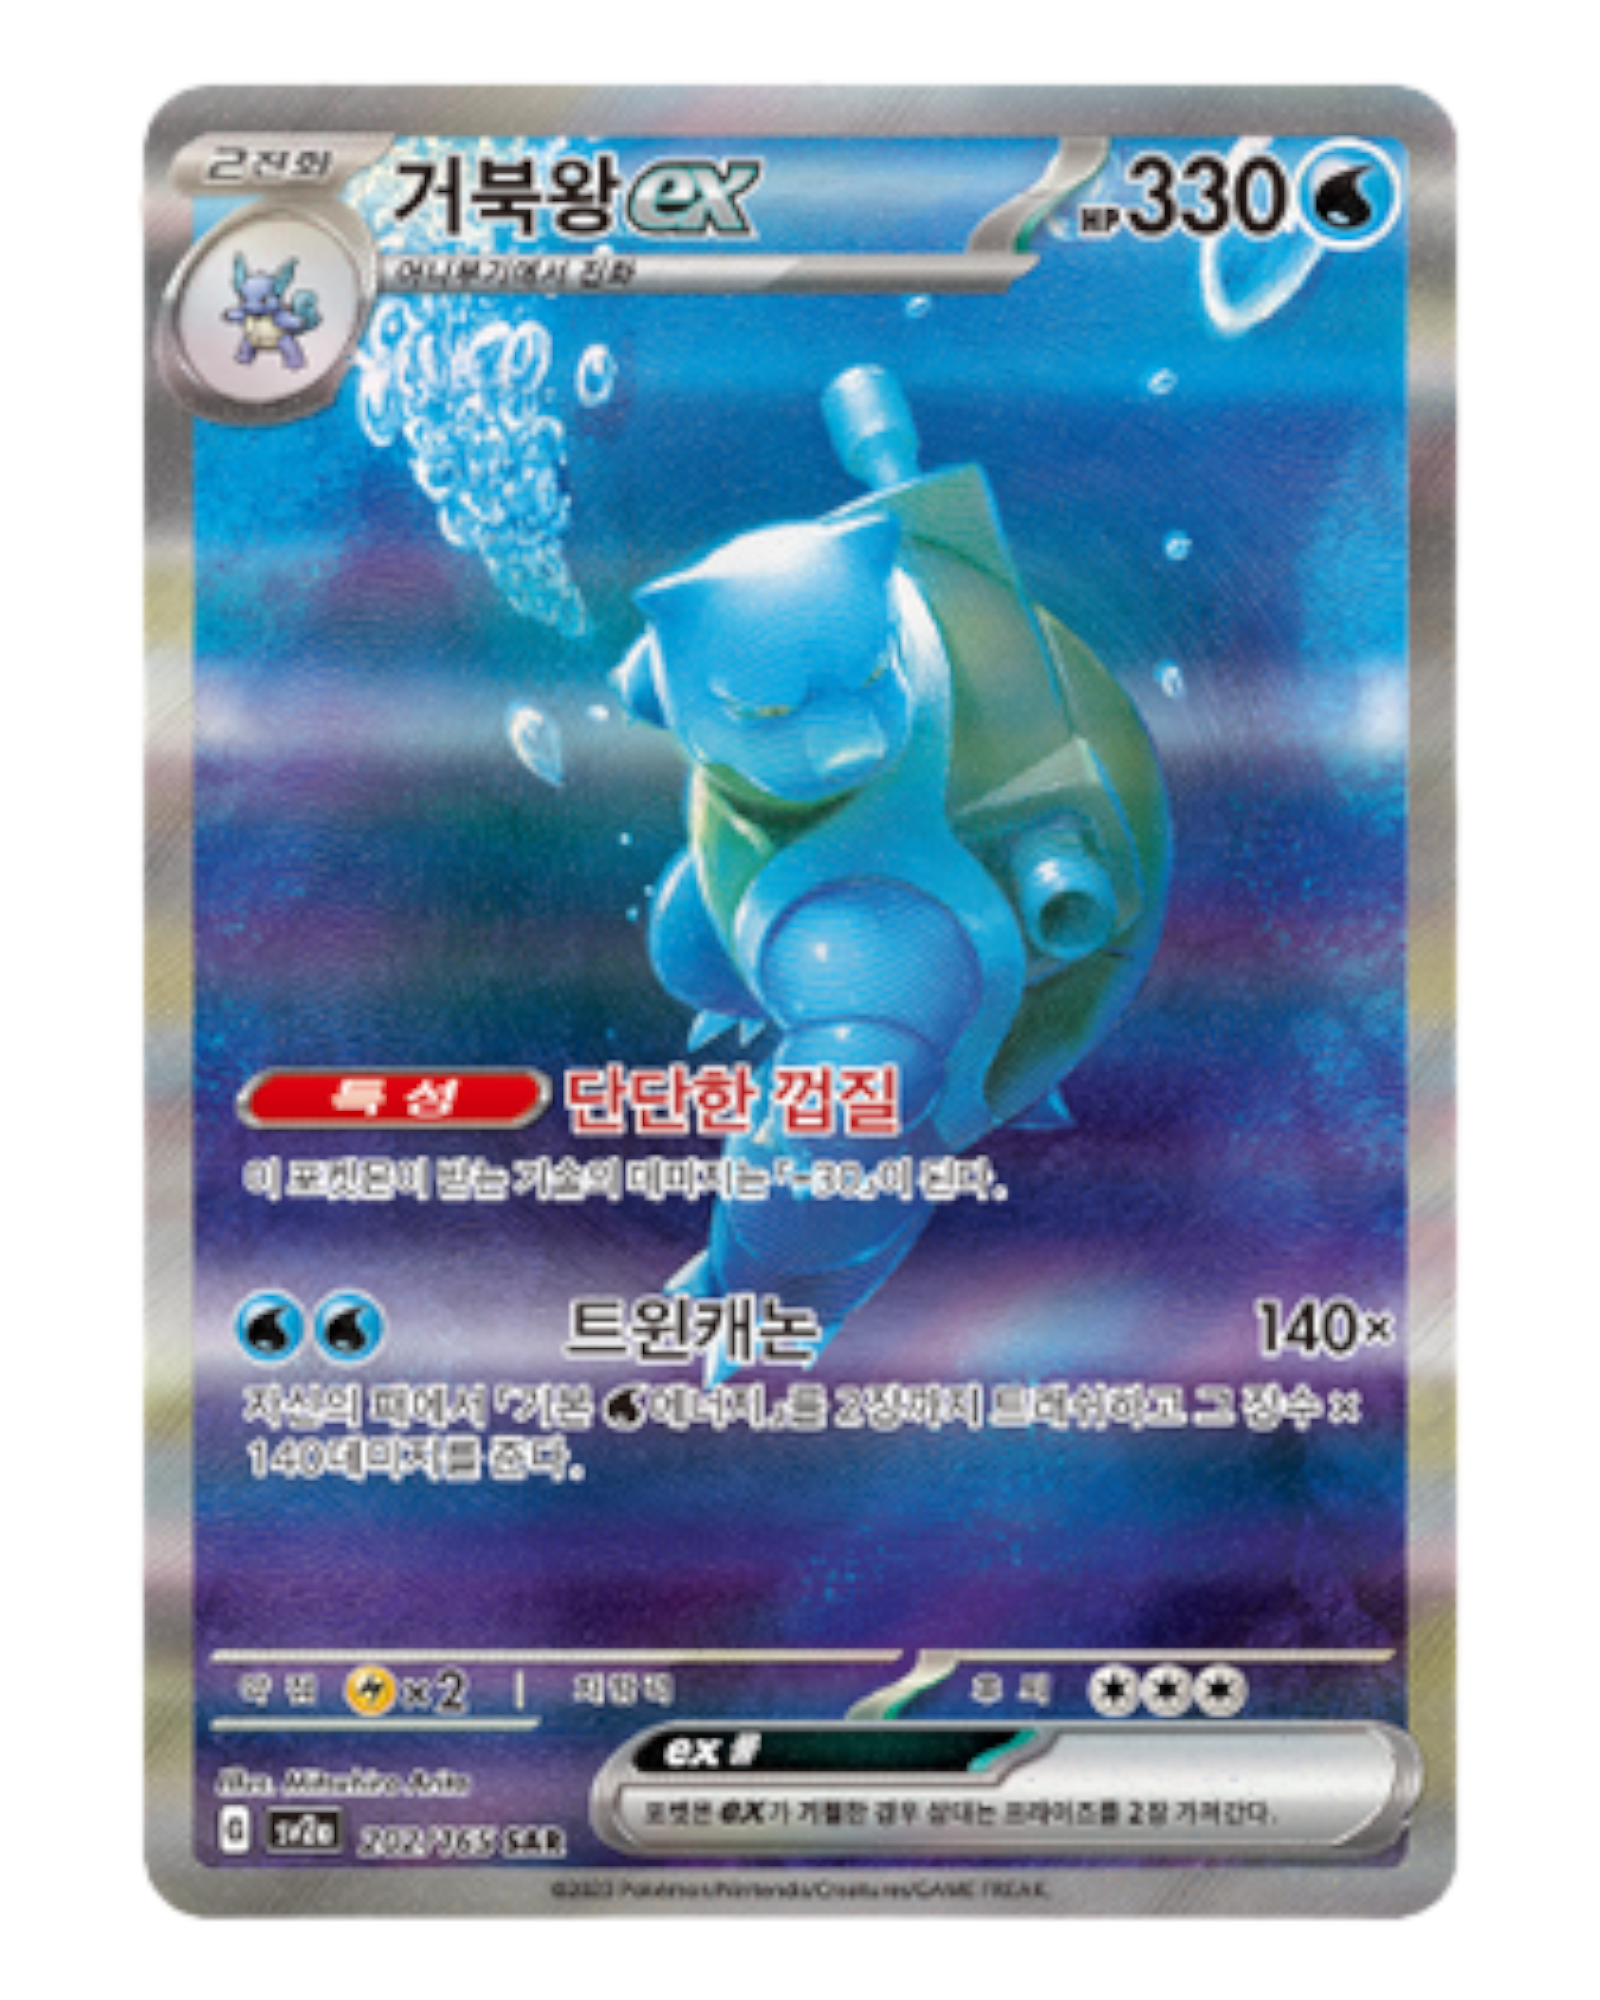 Pokémon Scarlet & Violet 151 Booster Pack - sv2a (Korean) – PokeUnlimited